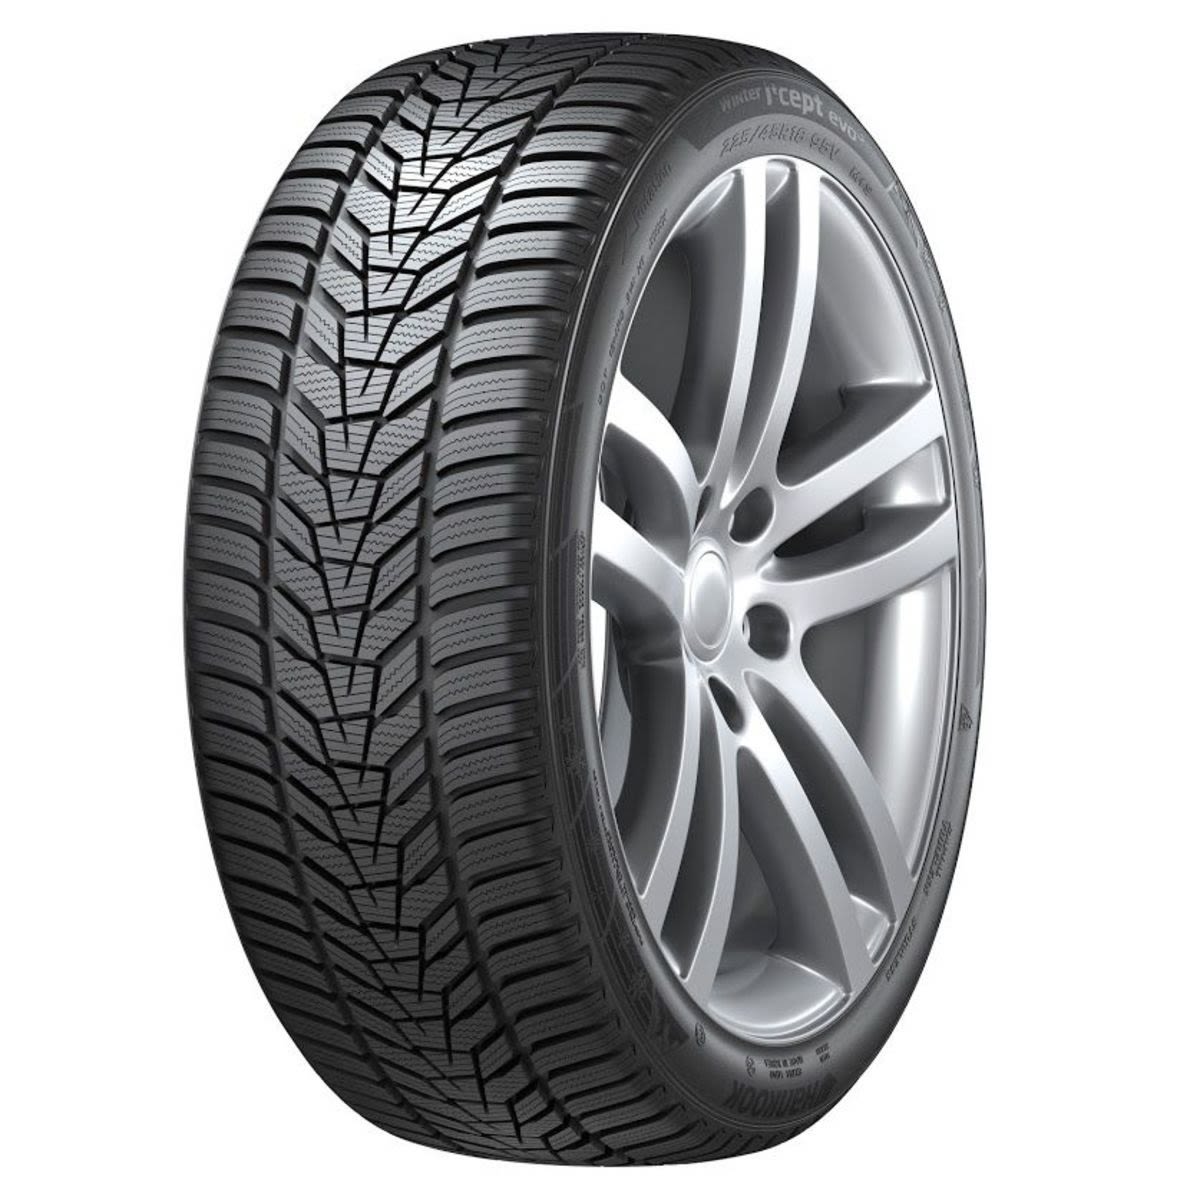 Neumáticos de invierno HANKOOK Winter i*cept evo3 W330 245/35R20 XL 95W